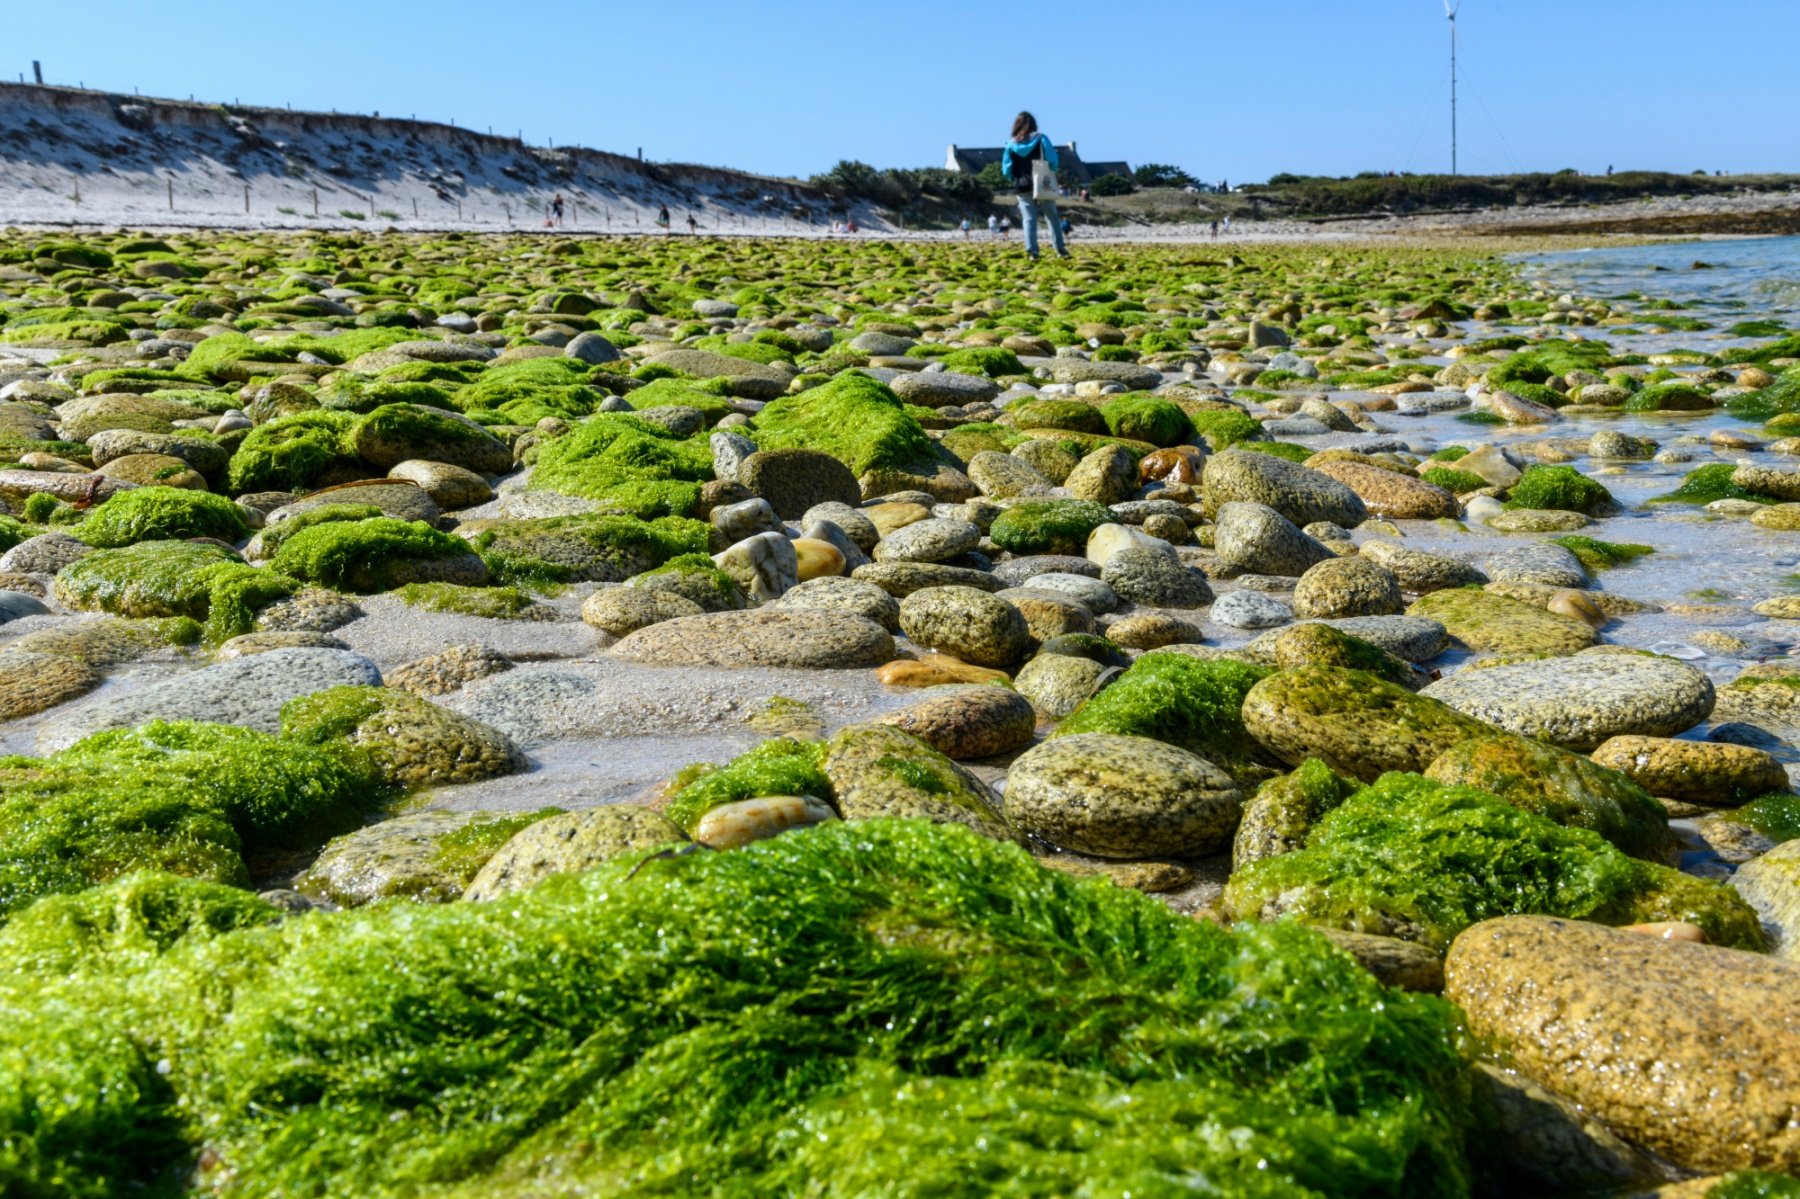 Algues vertes : pourquoi sont-elles si nocives pour l'environnement ? :  Tendances - Orange